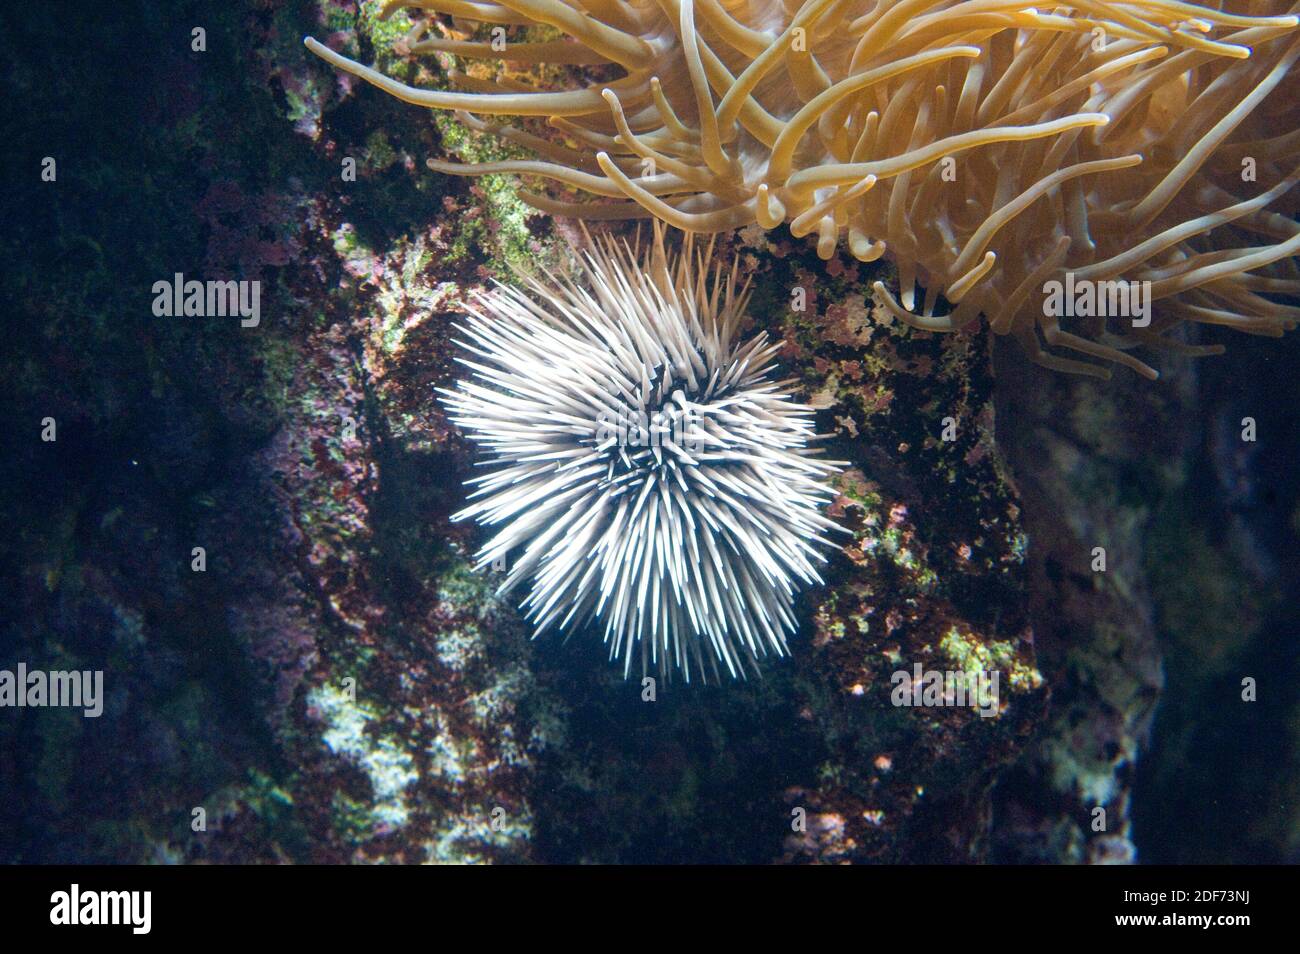 El erizo de madriguera (Echinometra mathaei) es un erizo de mar nativo de la región del Indo-Pacífico. Foto de stock